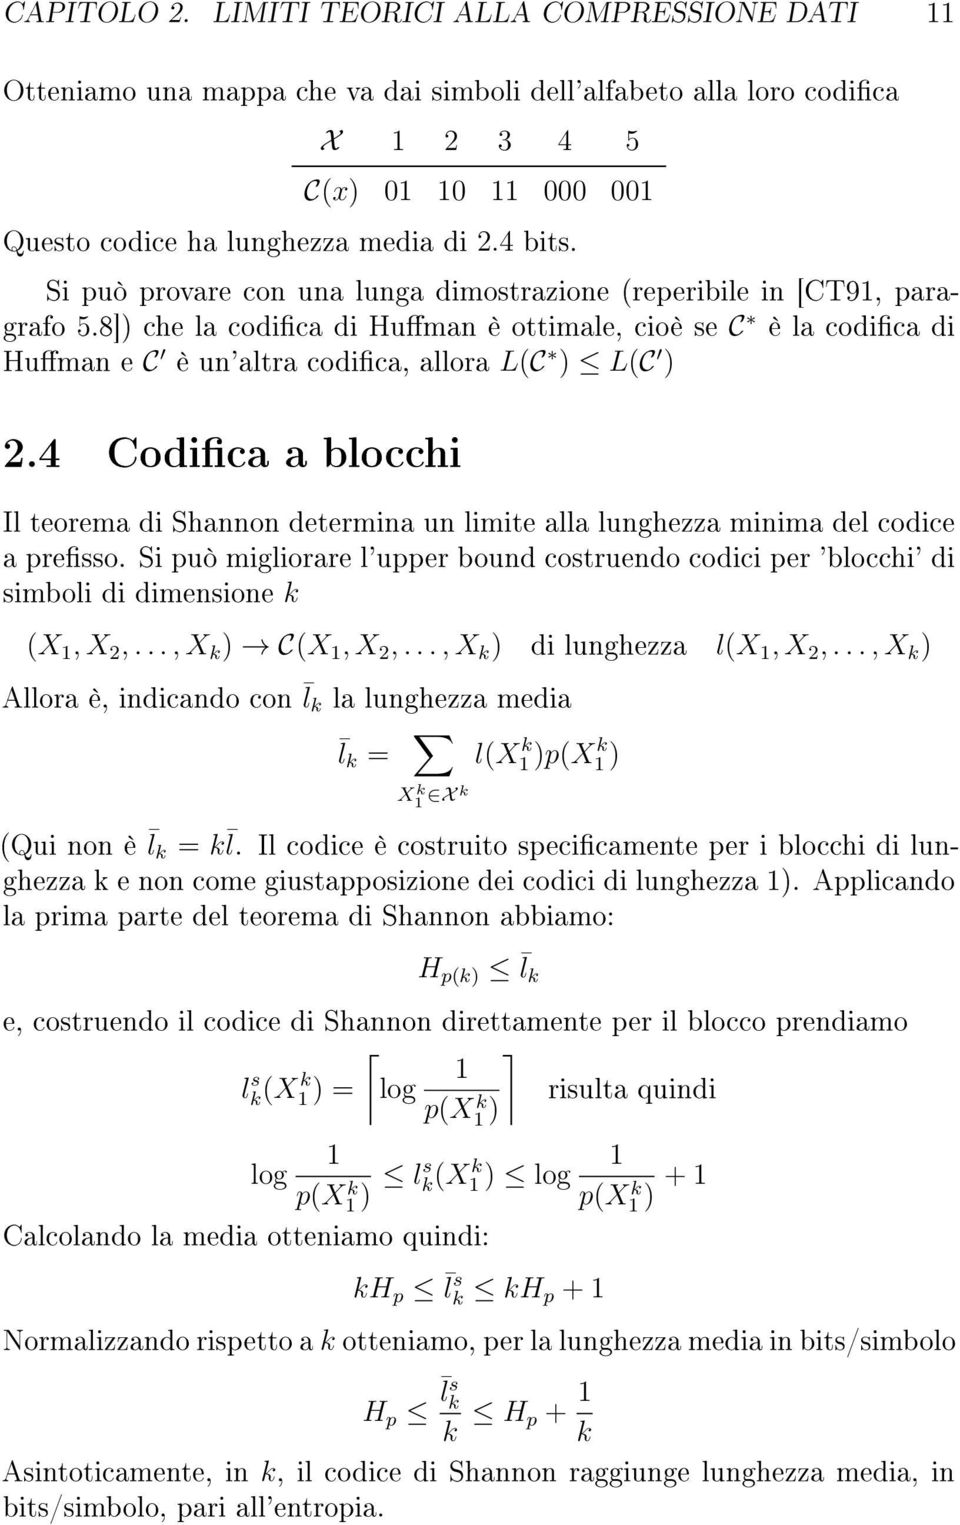 4 Codca a blocch Il teorema d Shannon determna un lmte alla lunghezza mnma del codce a presso. S può mglorare l'upper bound costruendo codc per 'blocch' d smbol d dmensone k (X 1, X 2,.